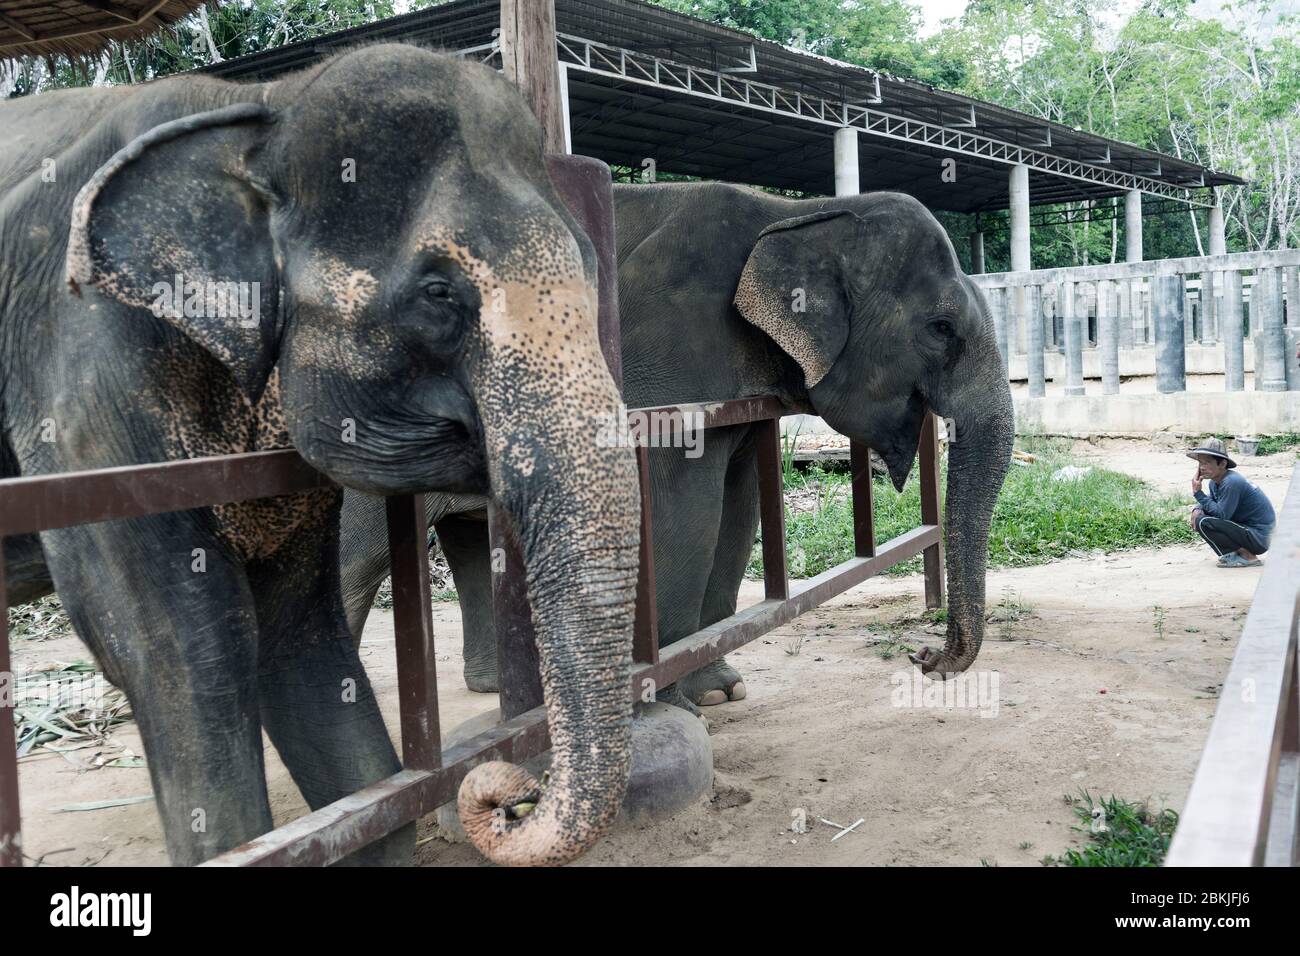 Thailand, Province of Phuket, Phuket Elephant Sanctuary Stock Photo